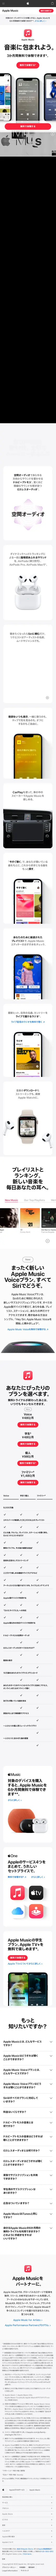 キャプチャ画面 会社名:Appleプロジェクト名:appleMUSIC 画面名:B デバイス名:SPカテゴリ:WEB・インターネットタグ:SP,B